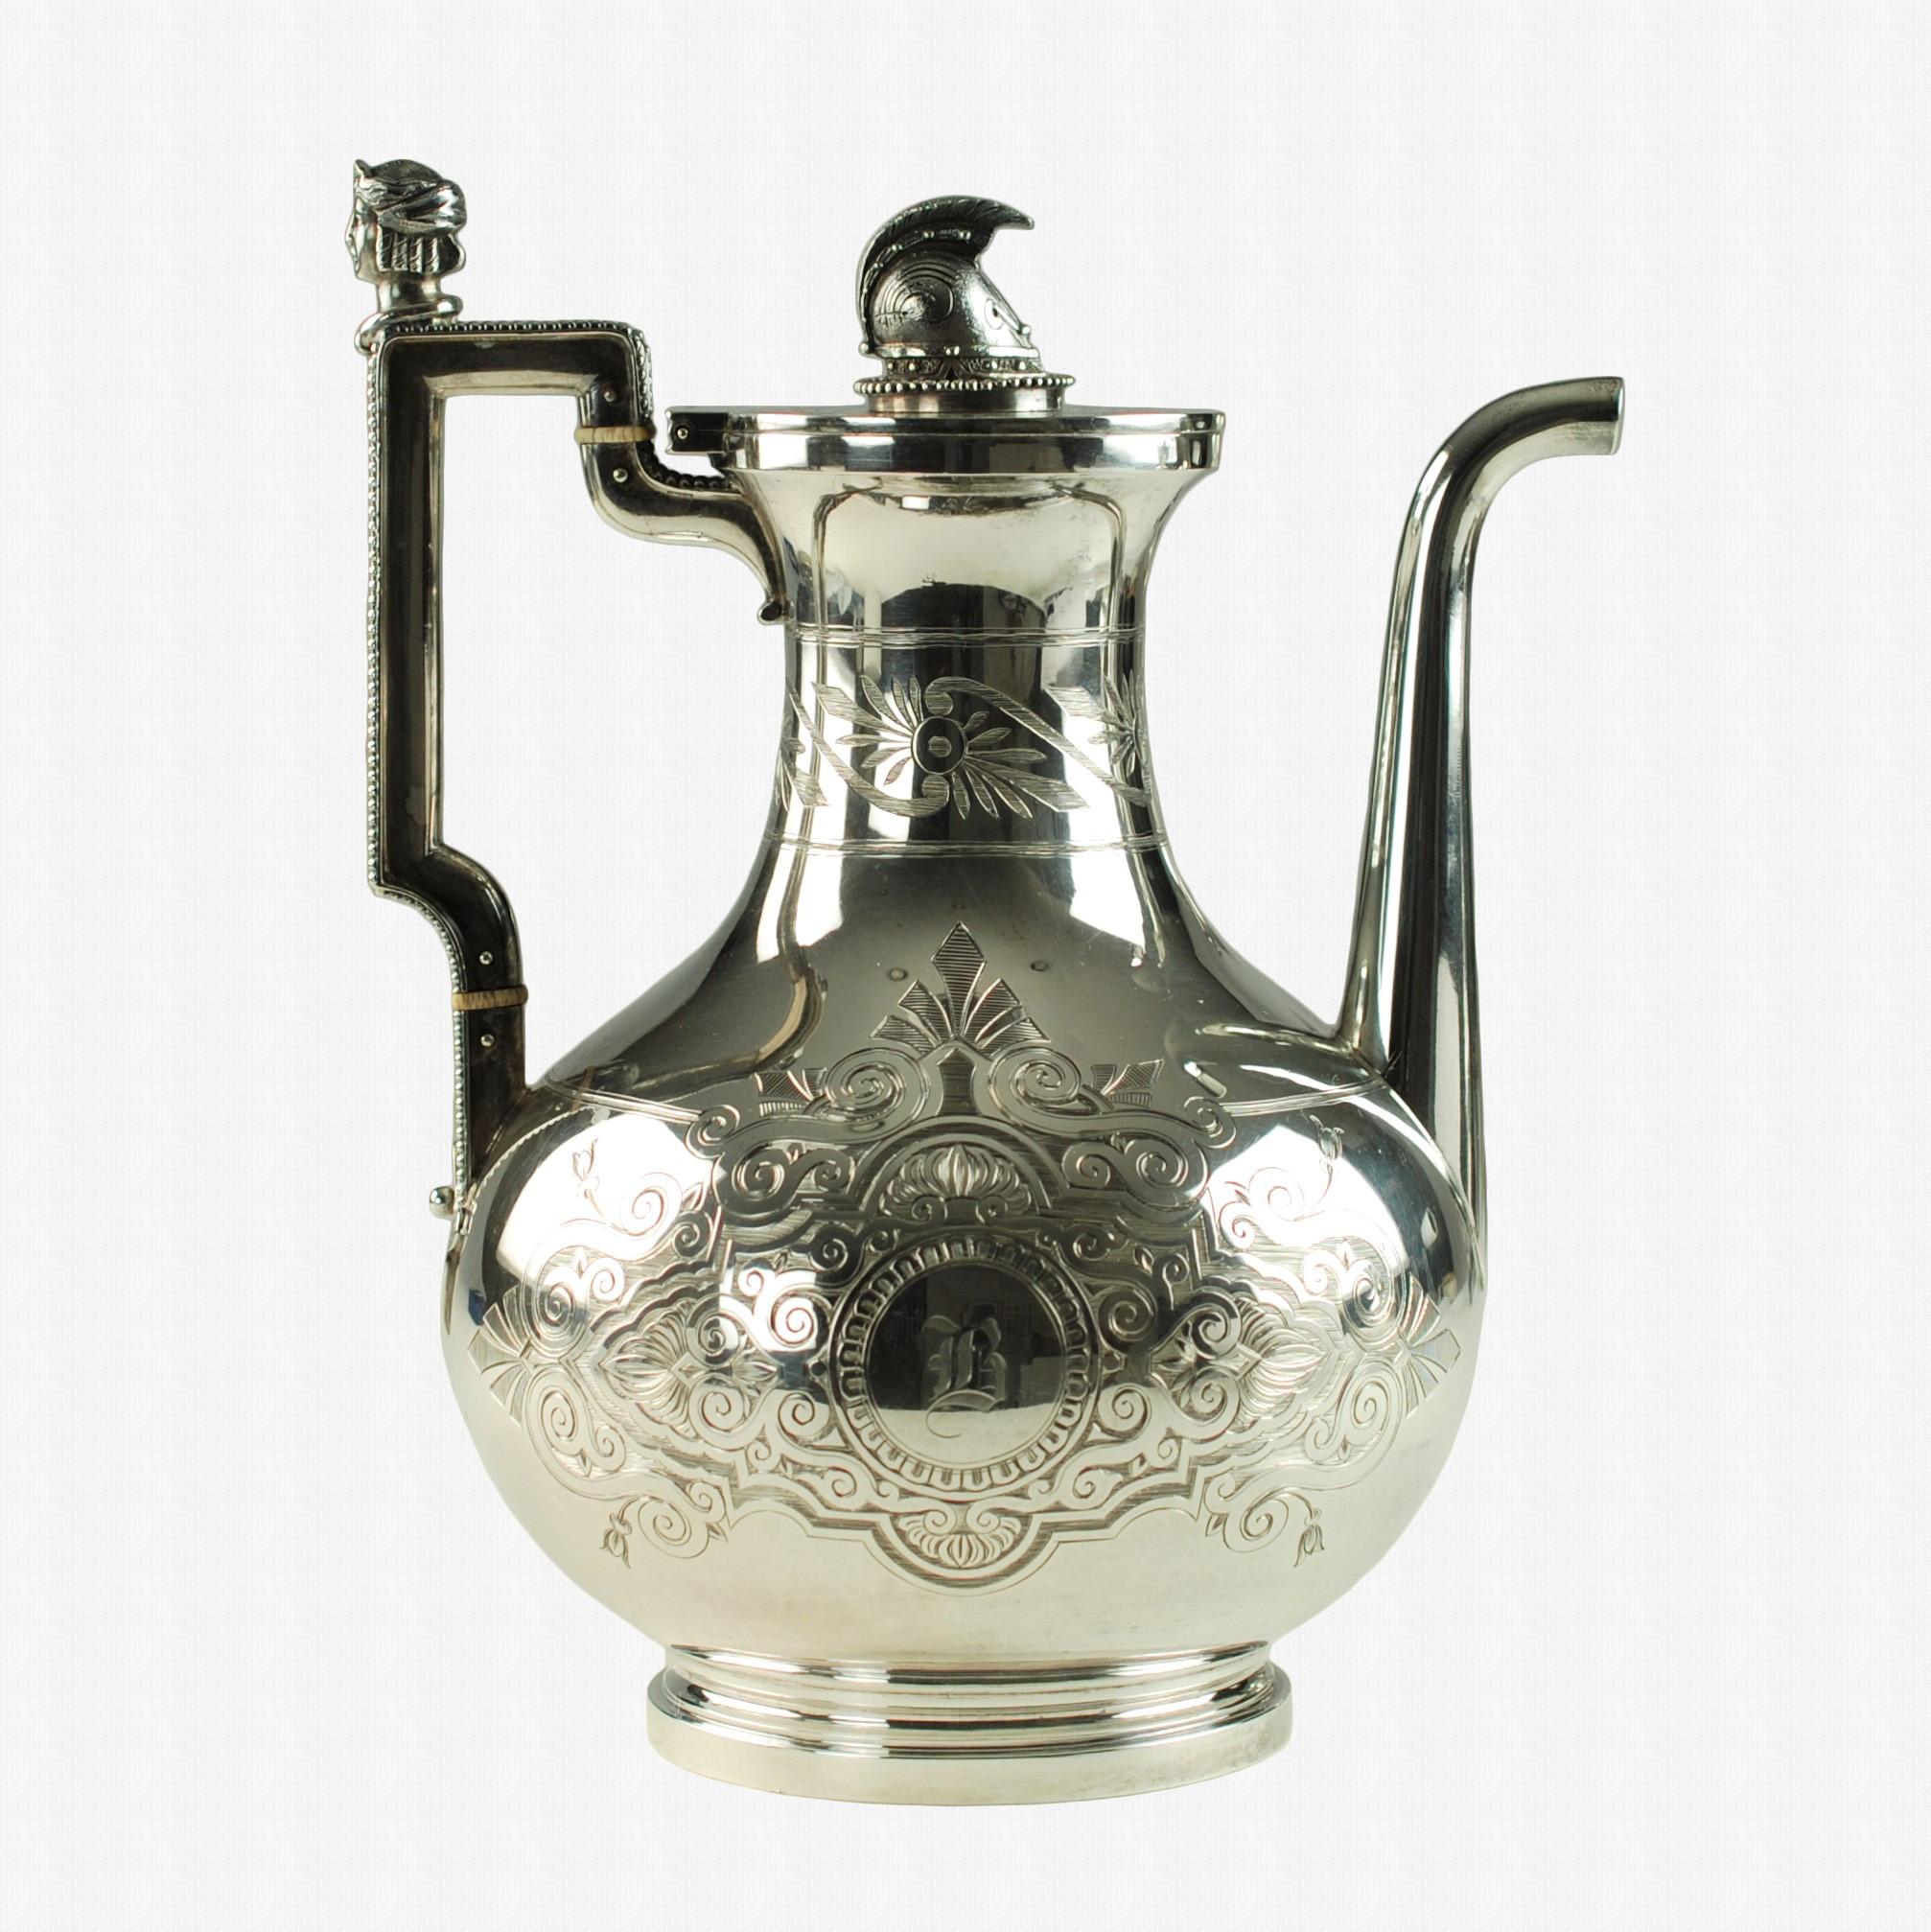 Dieses neoklassische Tee- und Kaffeeservice aus Sterlingsilber wurde von dem berühmten Silberschmied John R. Wendt (1826-1907) aus dem 19. Jahrhundert entworfen. Wendt, der als 